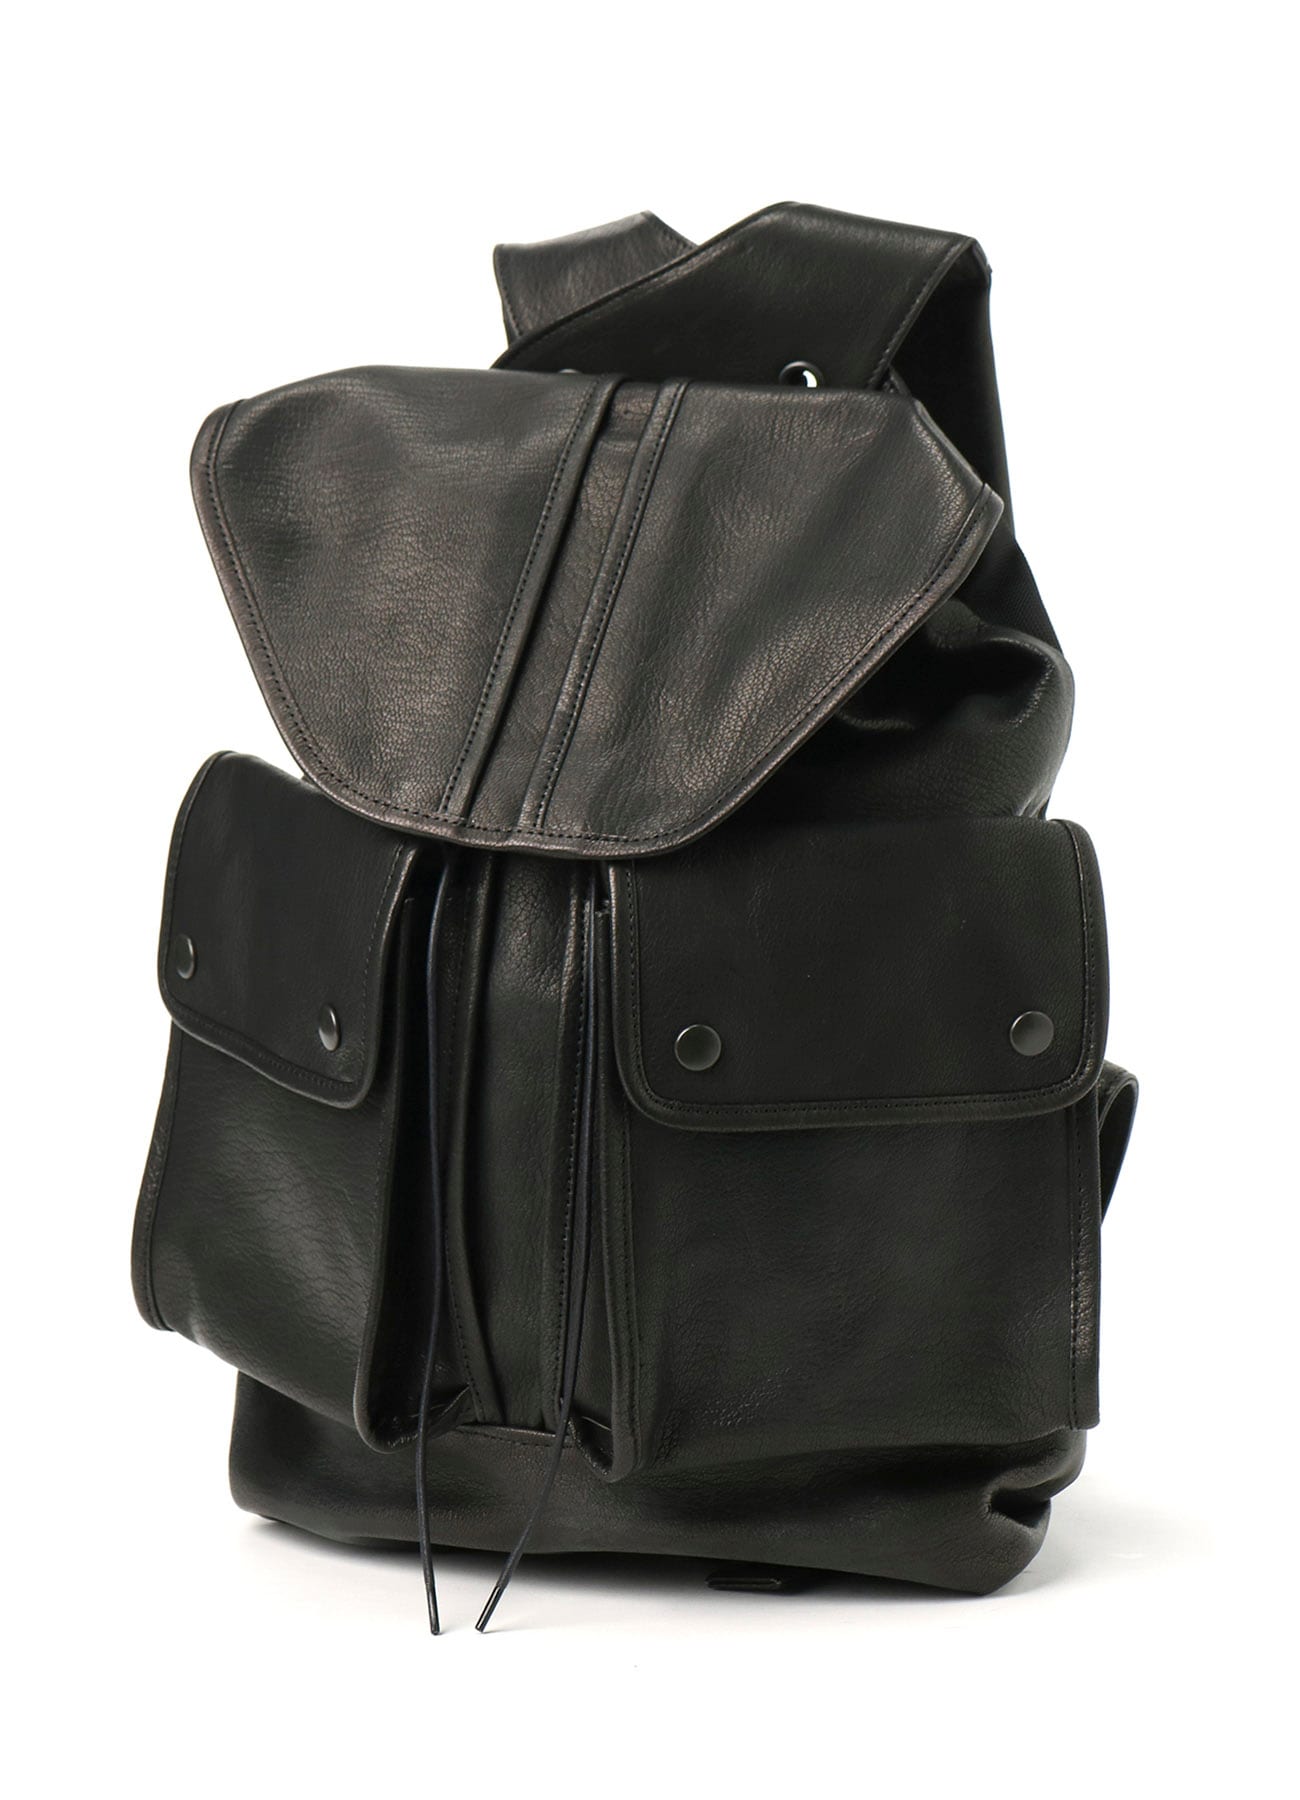 Matofu shoulder bag